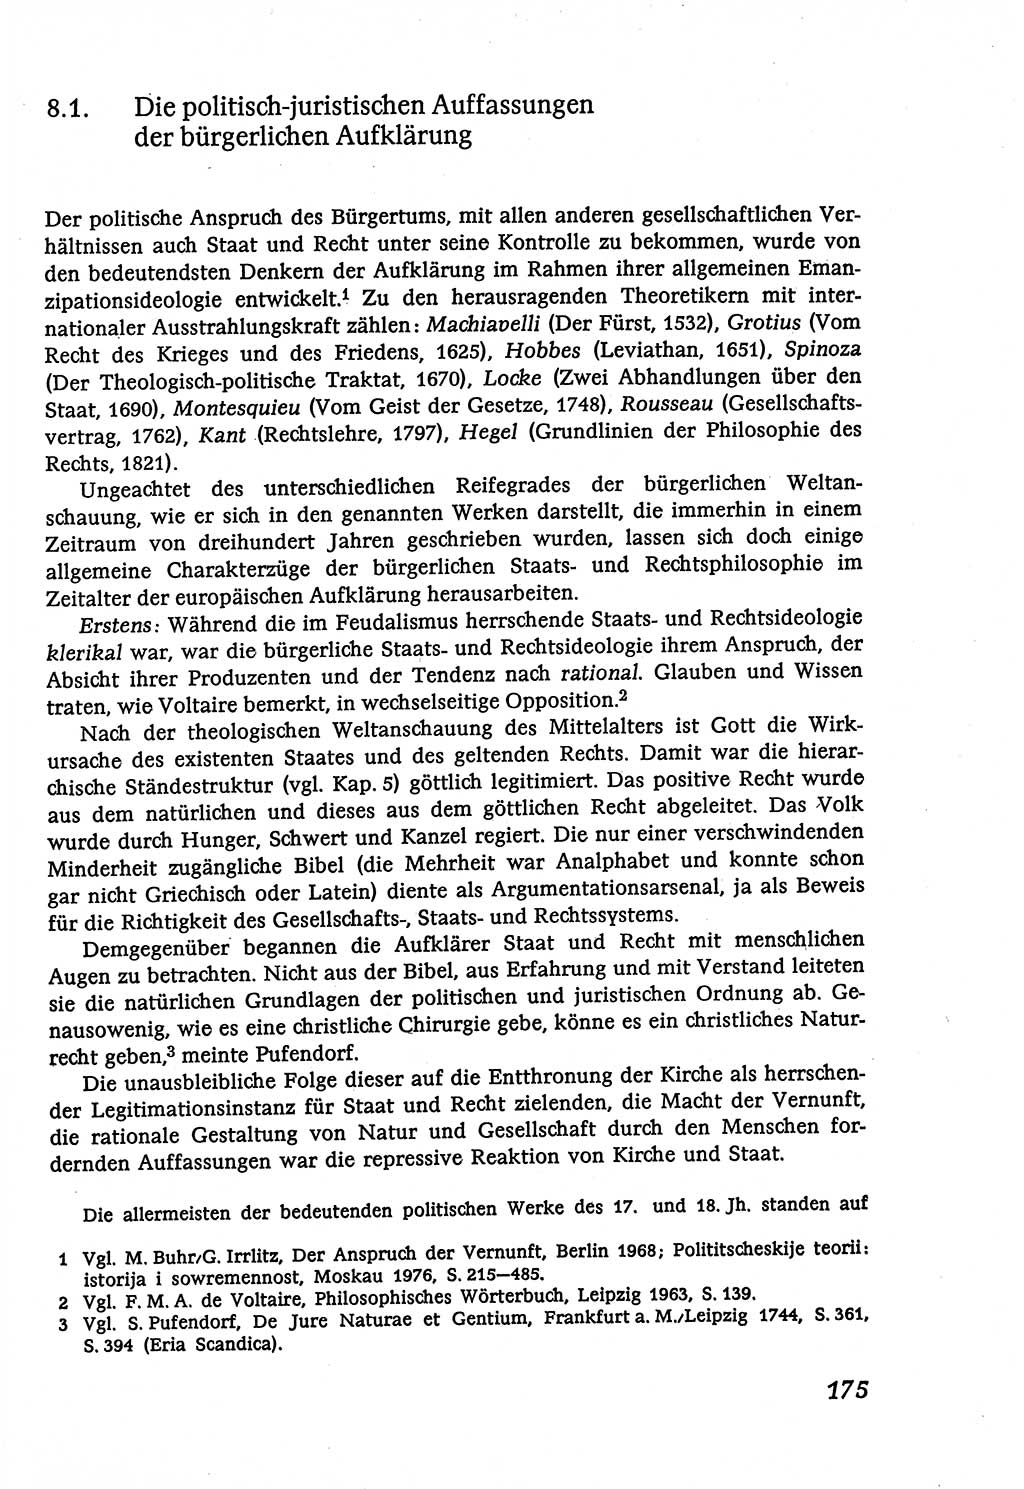 Marxistisch-leninistische (ML) Staats- und Rechtstheorie [Deutsche Demokratische Republik (DDR)], Lehrbuch 1980, Seite 175 (ML St.-R.-Th. DDR Lb. 1980, S. 175)